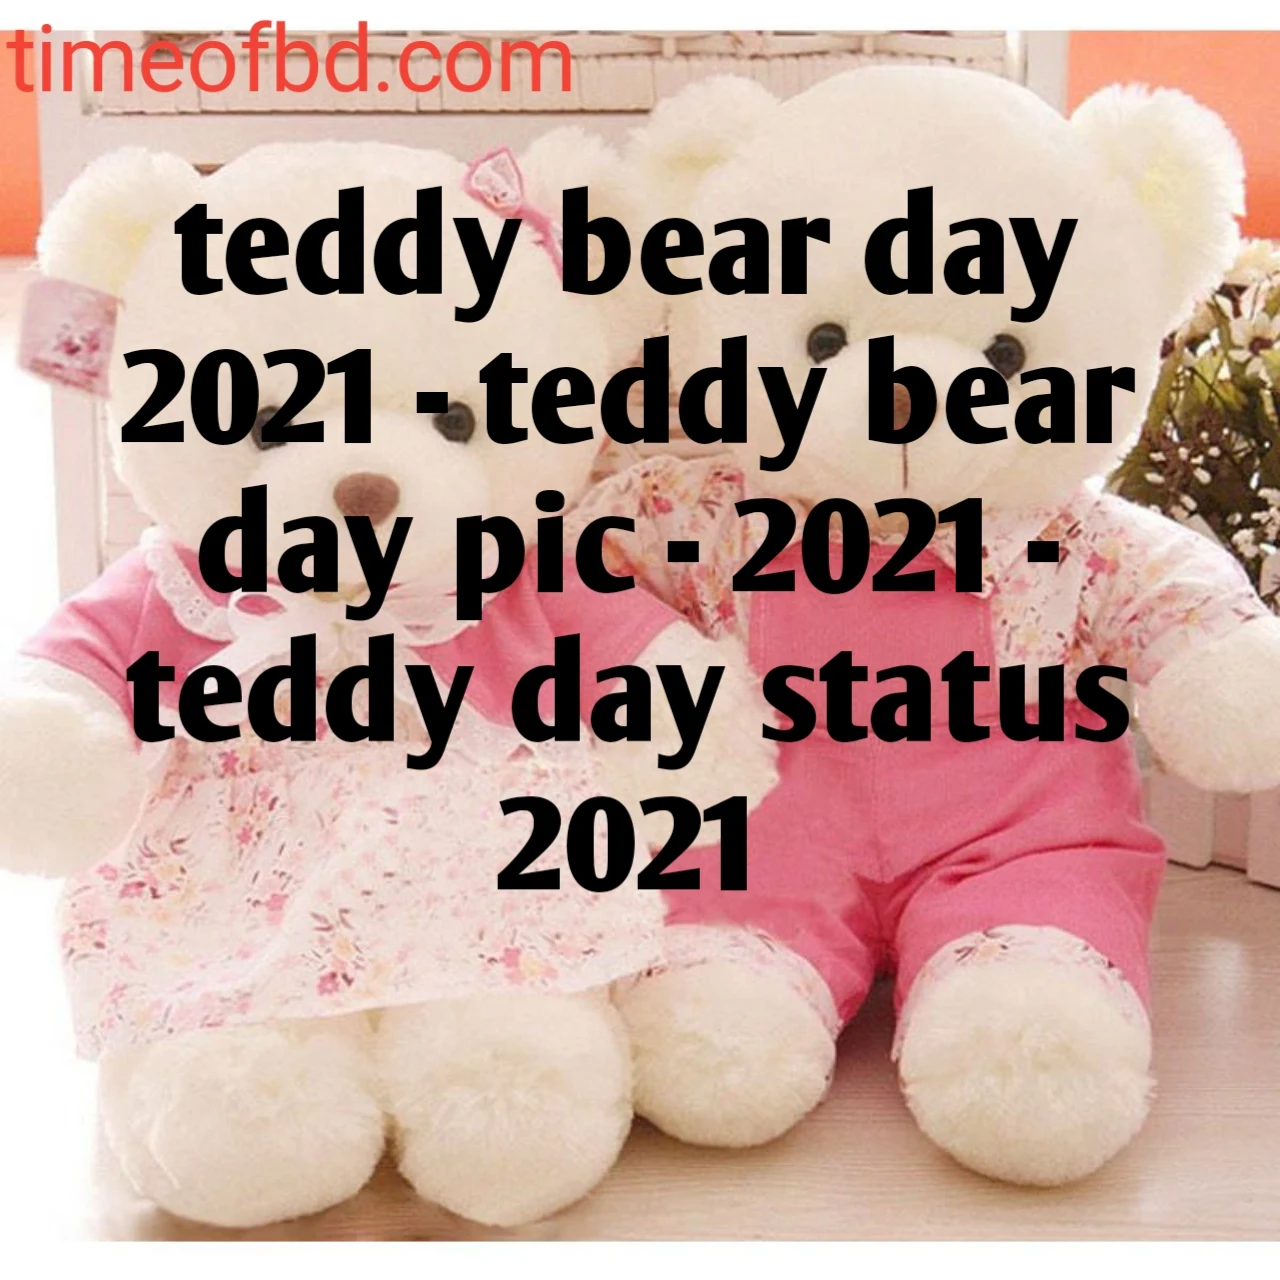 teddy bear day, teddy bear day pic, teddy bear day wishes, teddy bear day 2021, teddy bear day date, teddy bear day kab aata hai, teddy bear day 2020 in india, teddy day, teddy day pic, teddy day status, teddy day sms, teddy day quotes, teddy day wish, teddy day 2021, teddy day bangla sms, teddy day pic download, teddy day 2021 images, teddy day bangla,